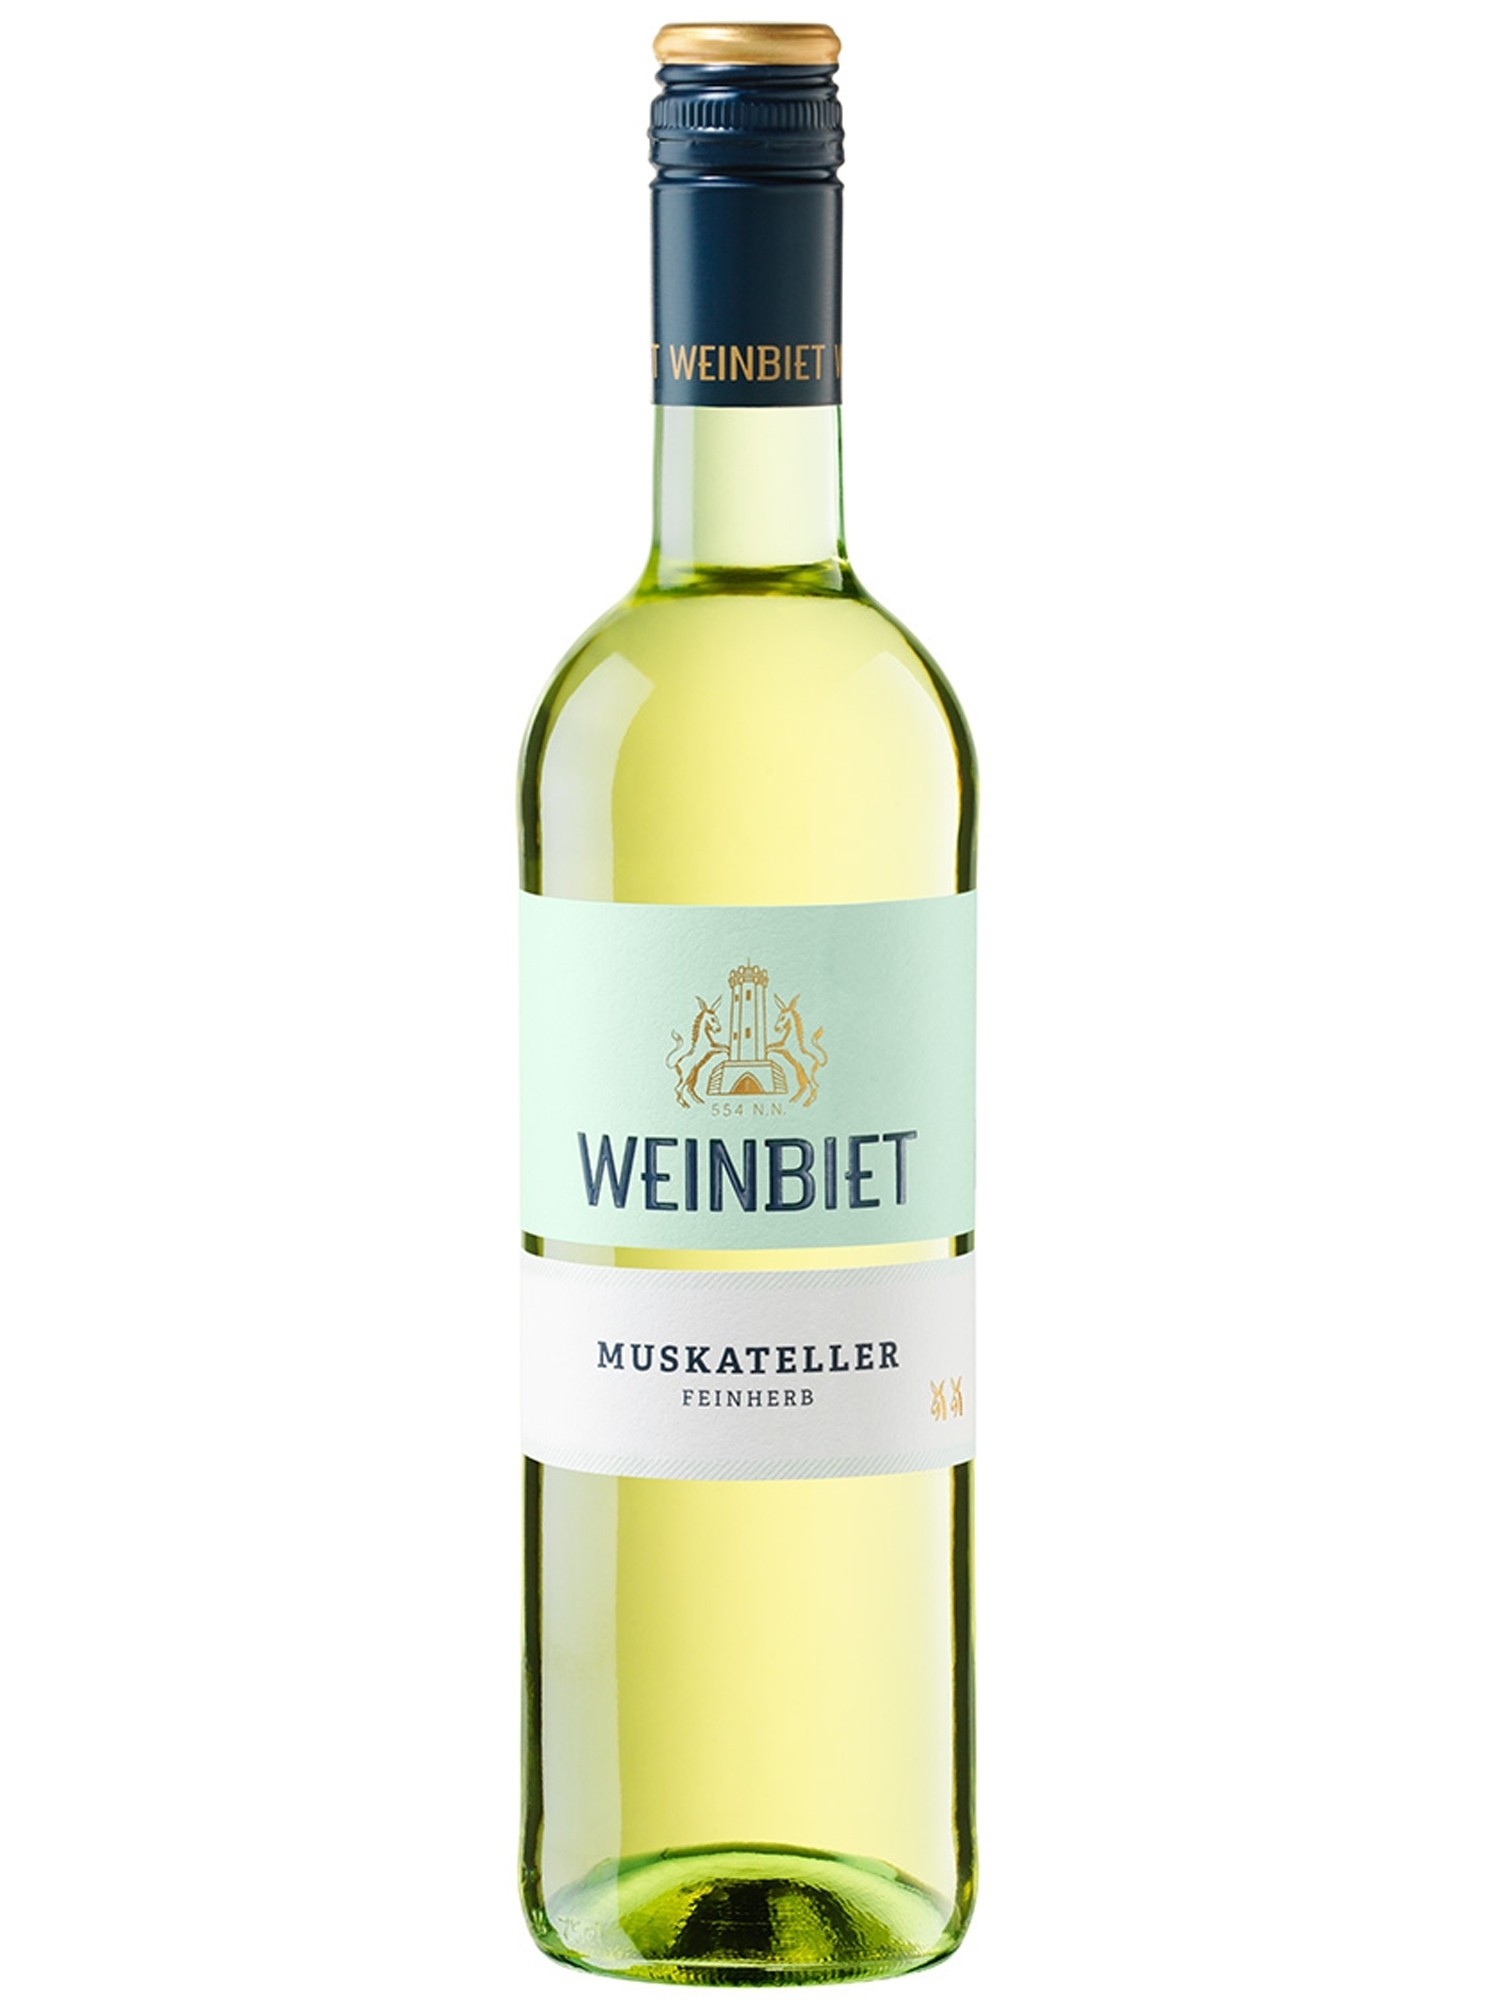 Weinbiet - feinherb | Wein Muskateller Pfalz Online